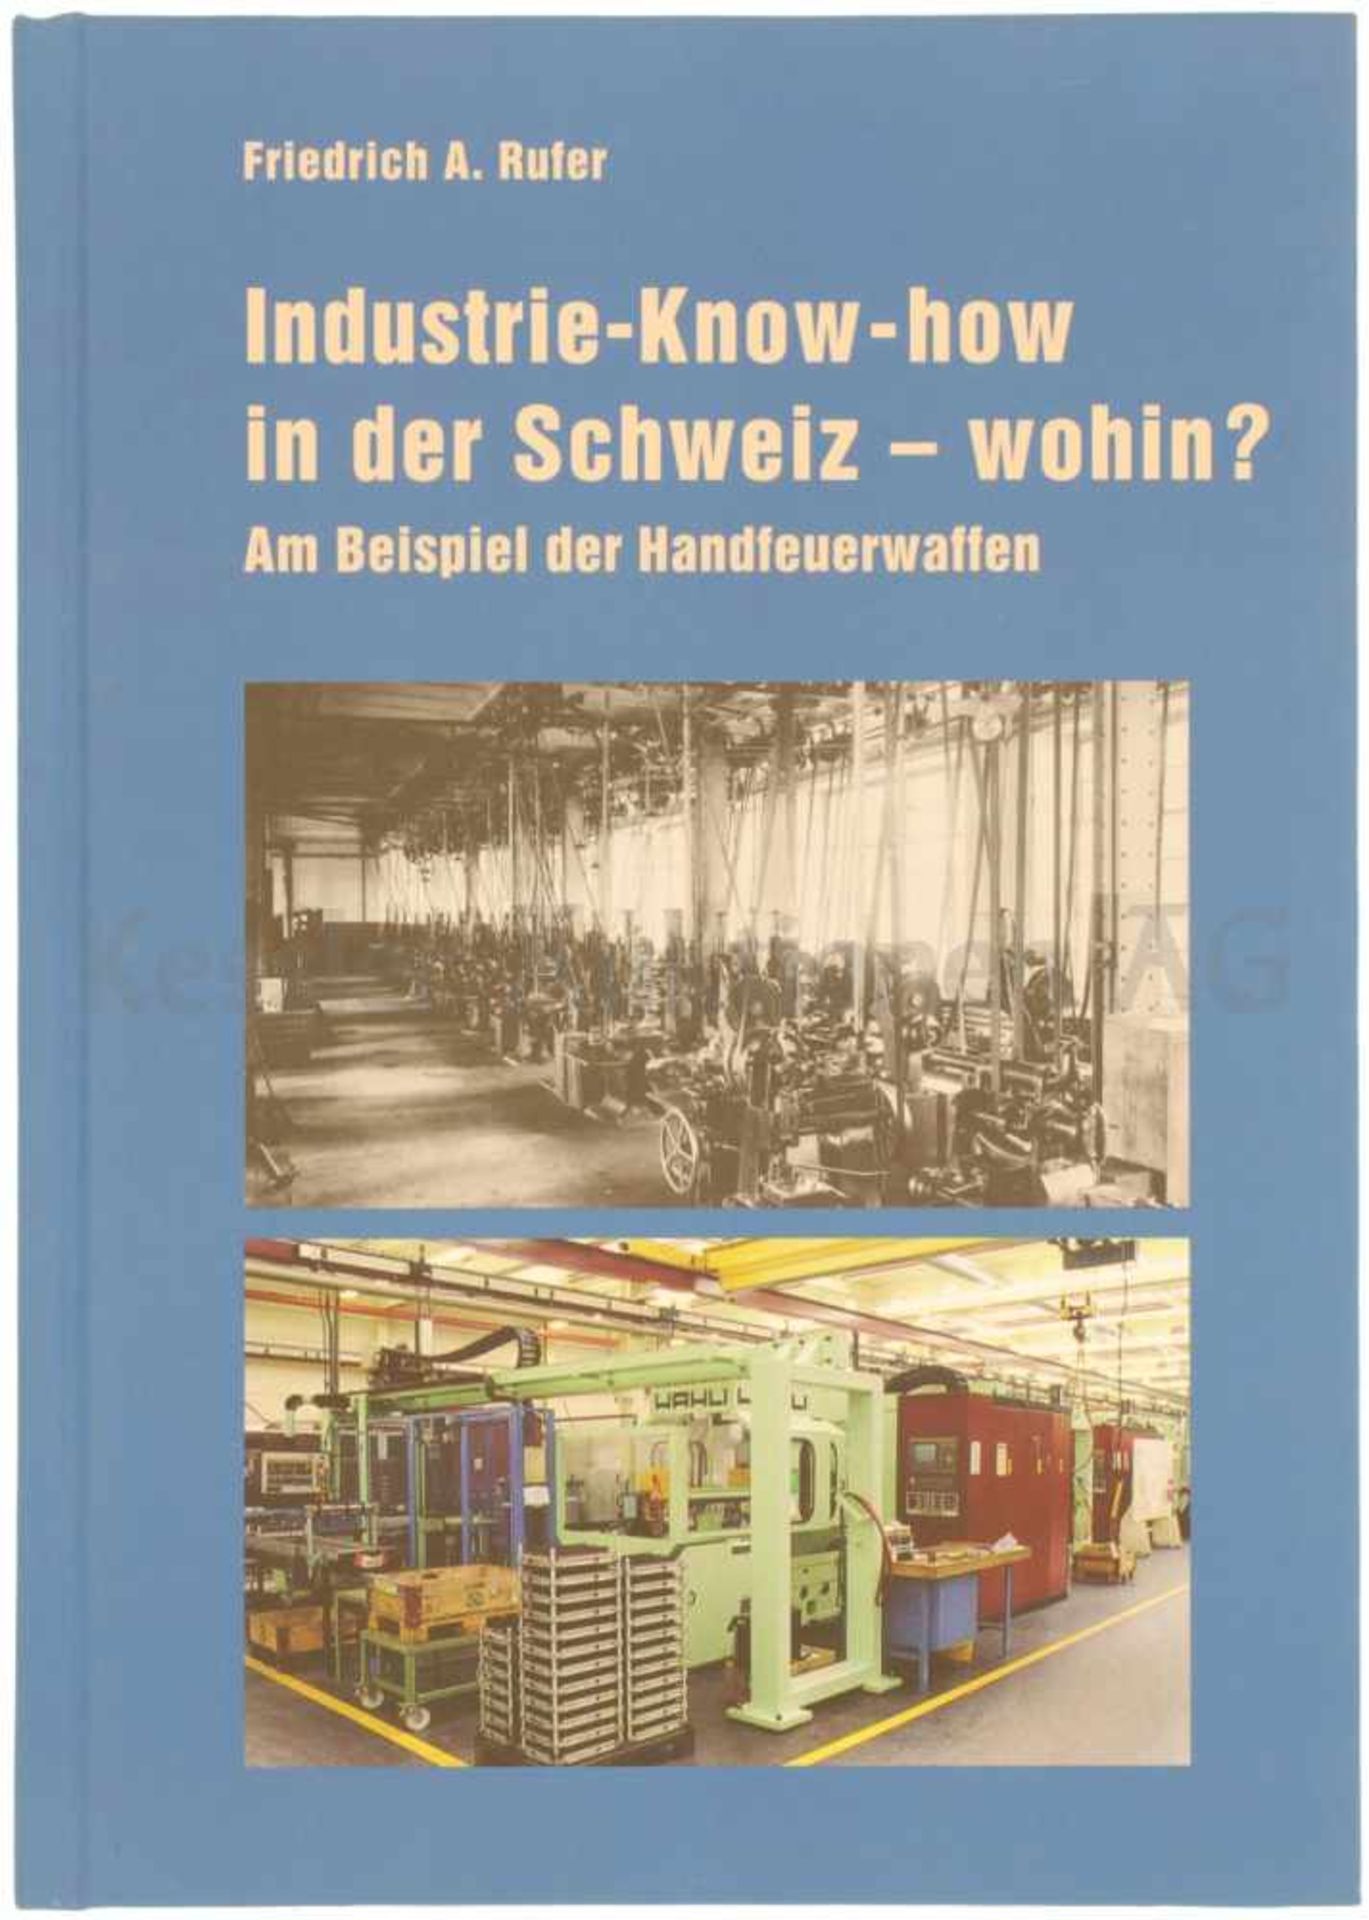 Industrie-Know-how, in der Schweiz - wohin? Friedrich A. Rufer zeigt am Beispiel der Handfeuerwaffen